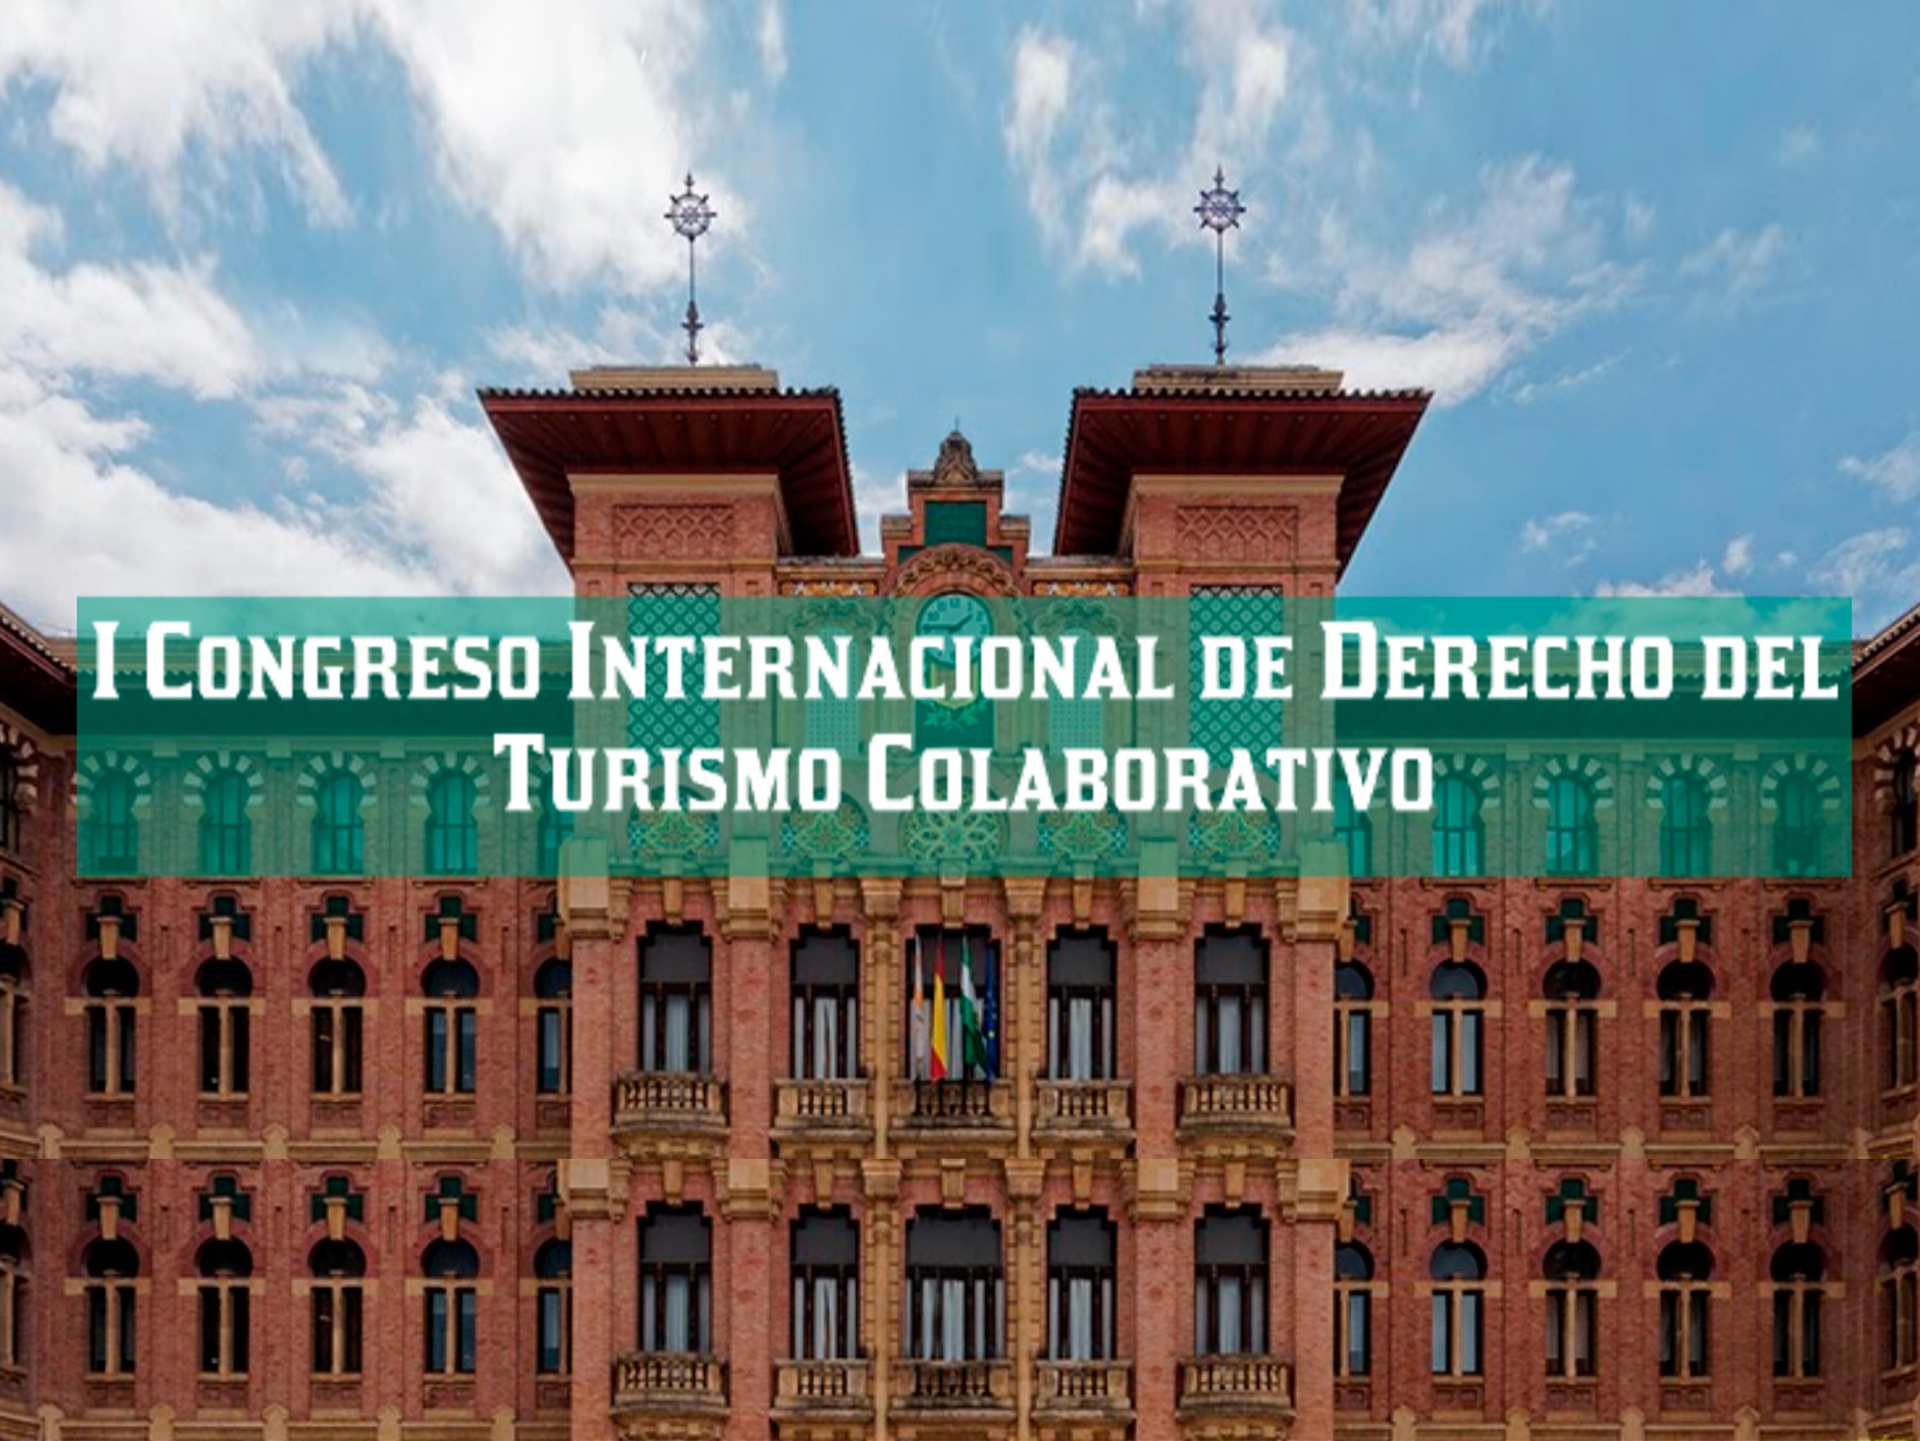 I Congreso Internacional de Derecho del Turismo colaborativo